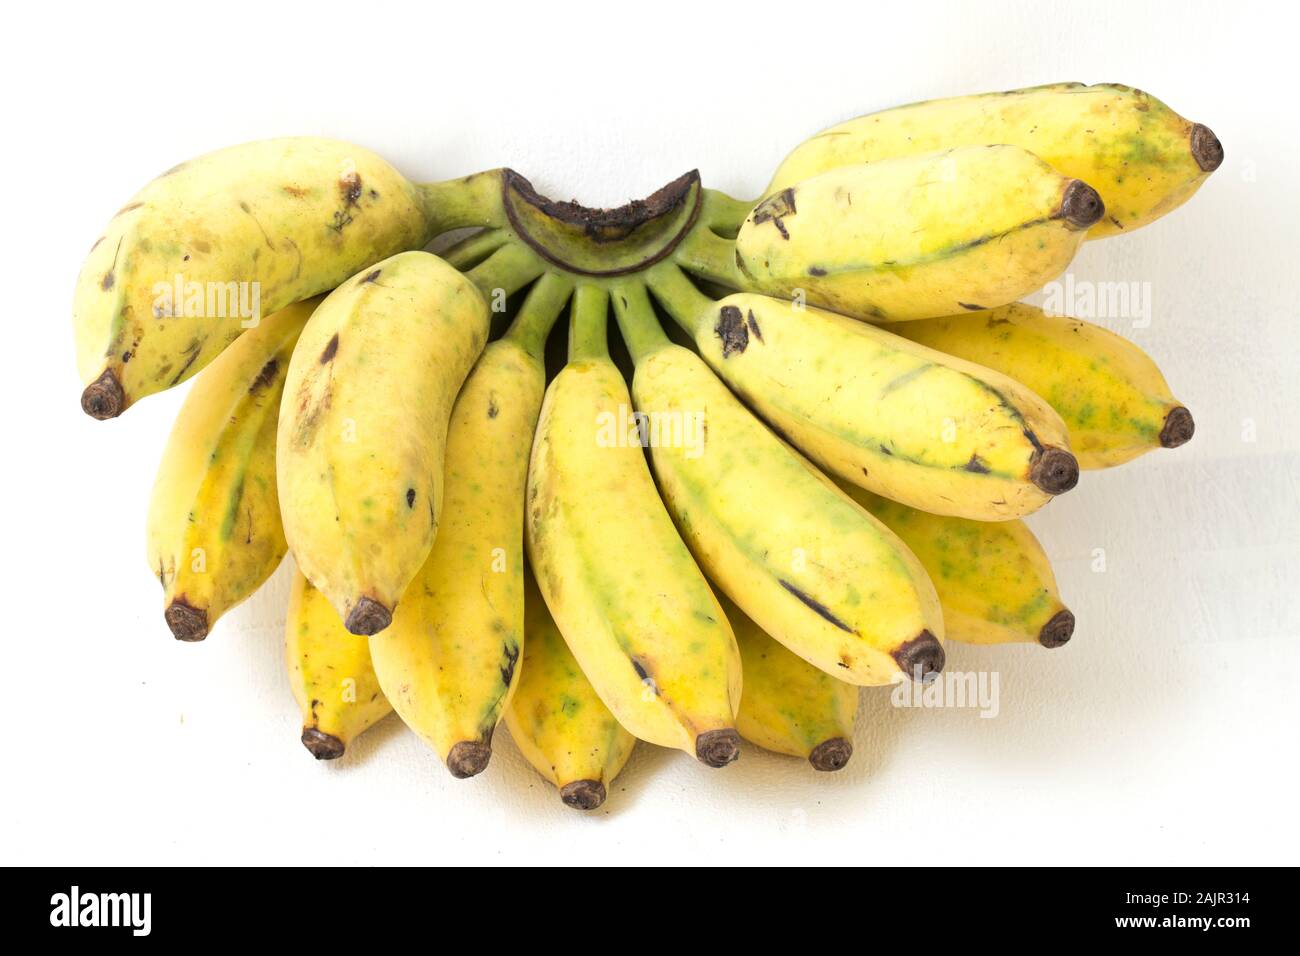 Abu pisang